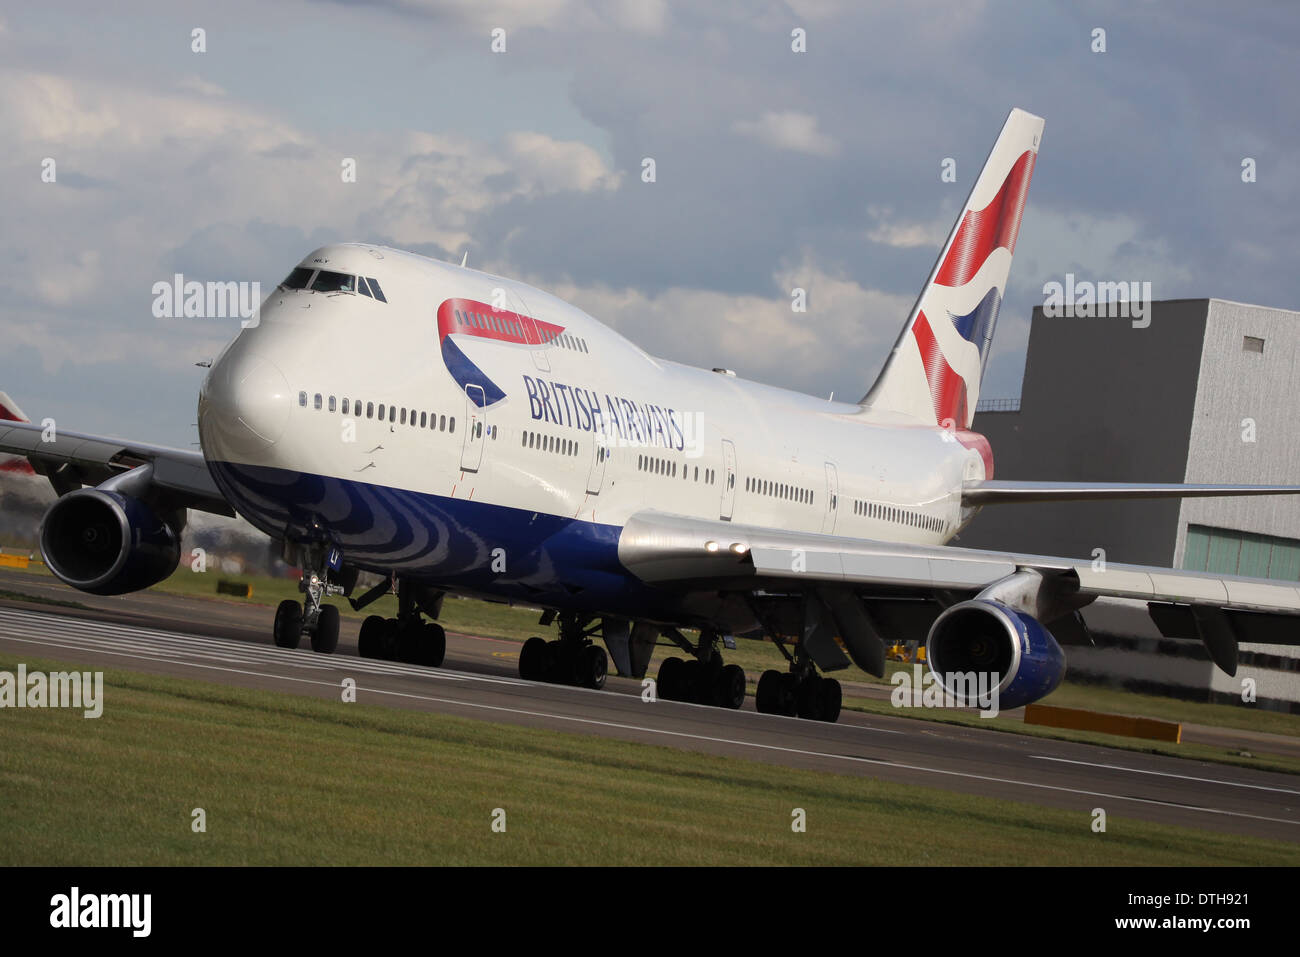 Boeing 747-400 de British Airways à Londres Heathow Aéroport International Banque D'Images